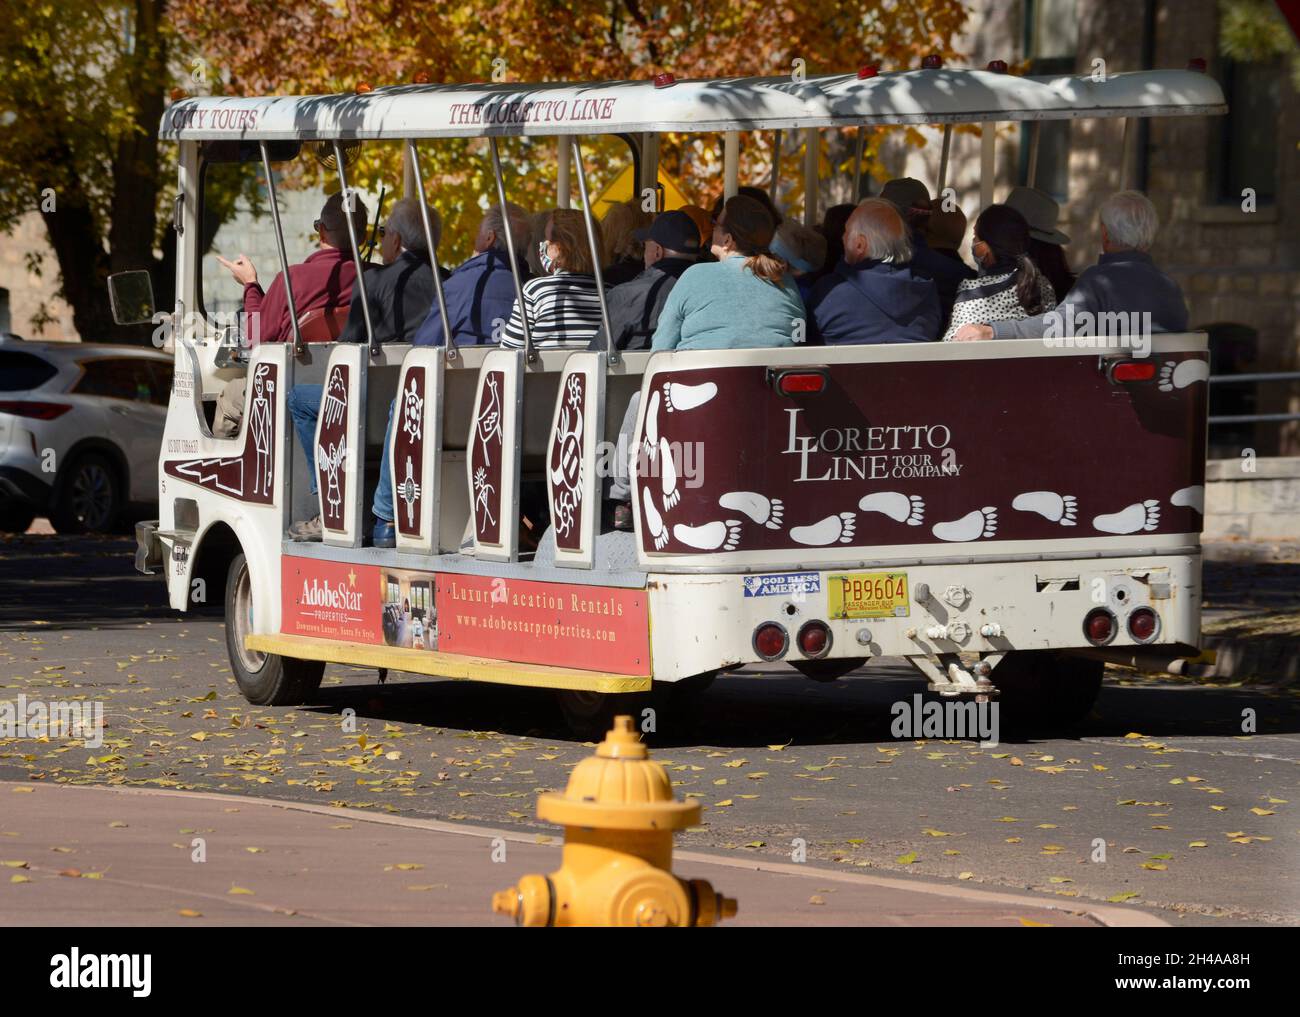 Touristen, die Santa Fe, New Mexico, besuchen, genießen eine geführte Bustour durch die Hauptstadt. Stockfoto